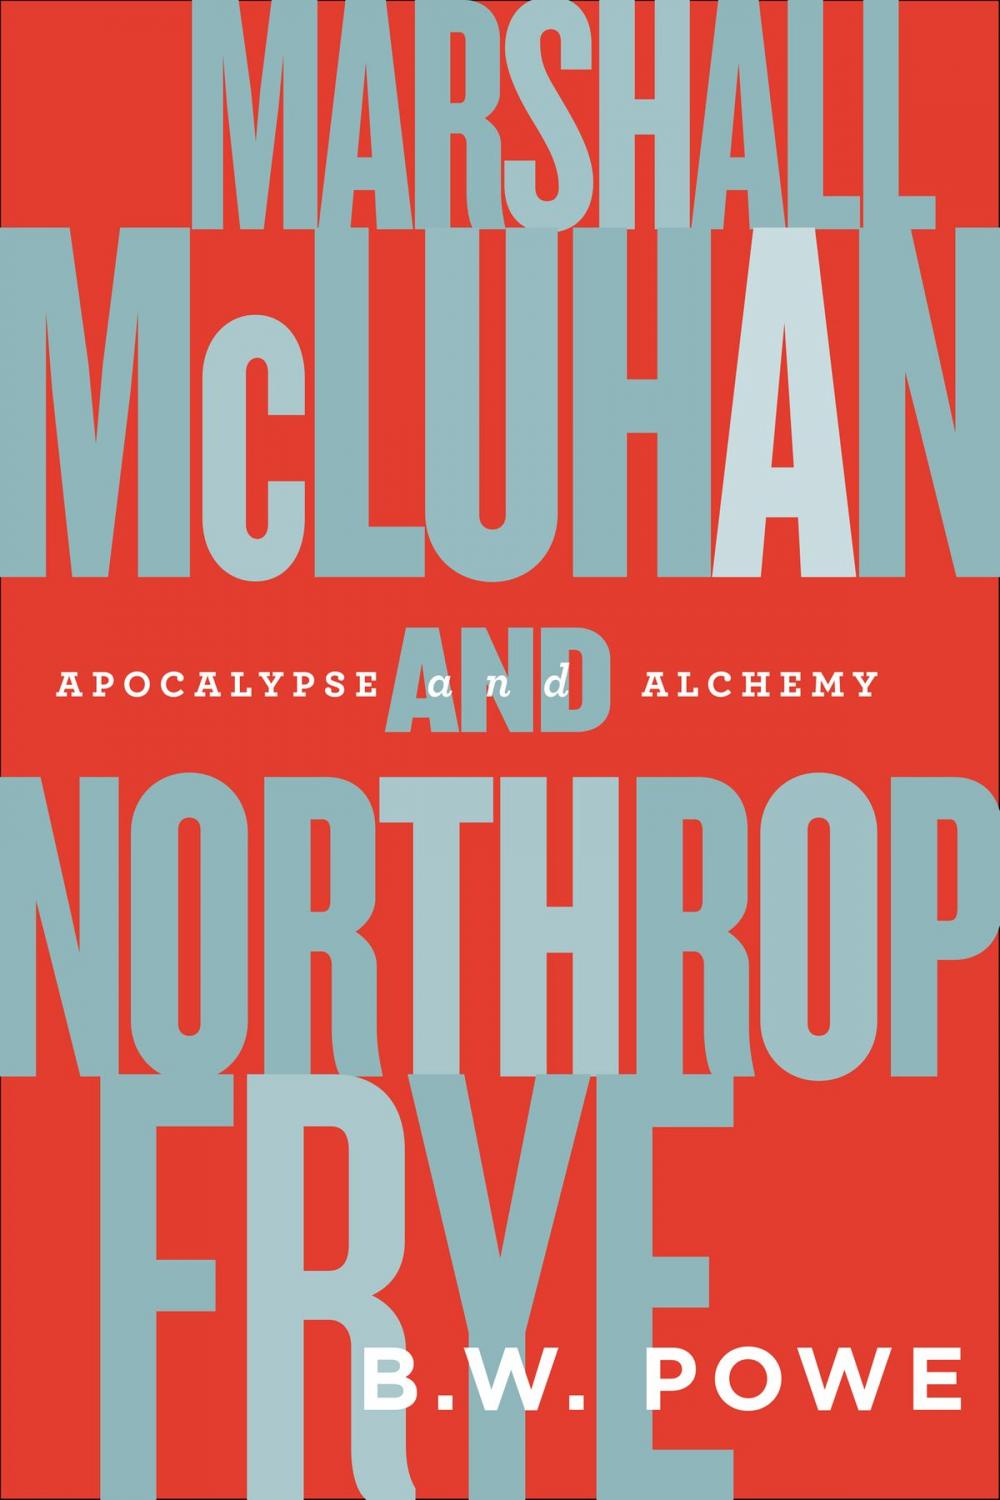 Big bigCover of Marshall McLuhan and Northrop Frye